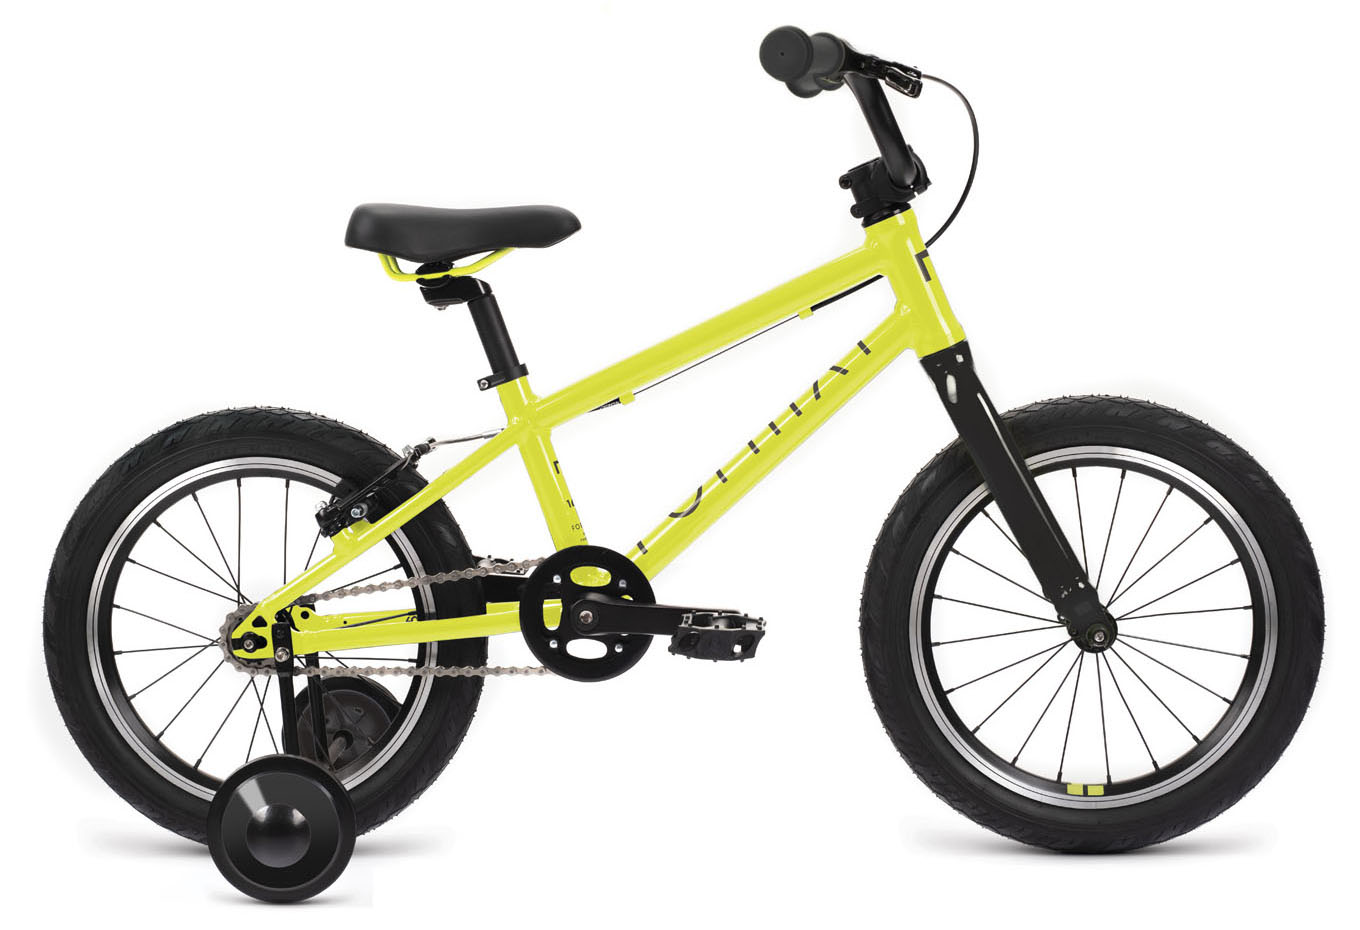  Отзывы о Детском велосипеде Format Kids 16 LE 2022